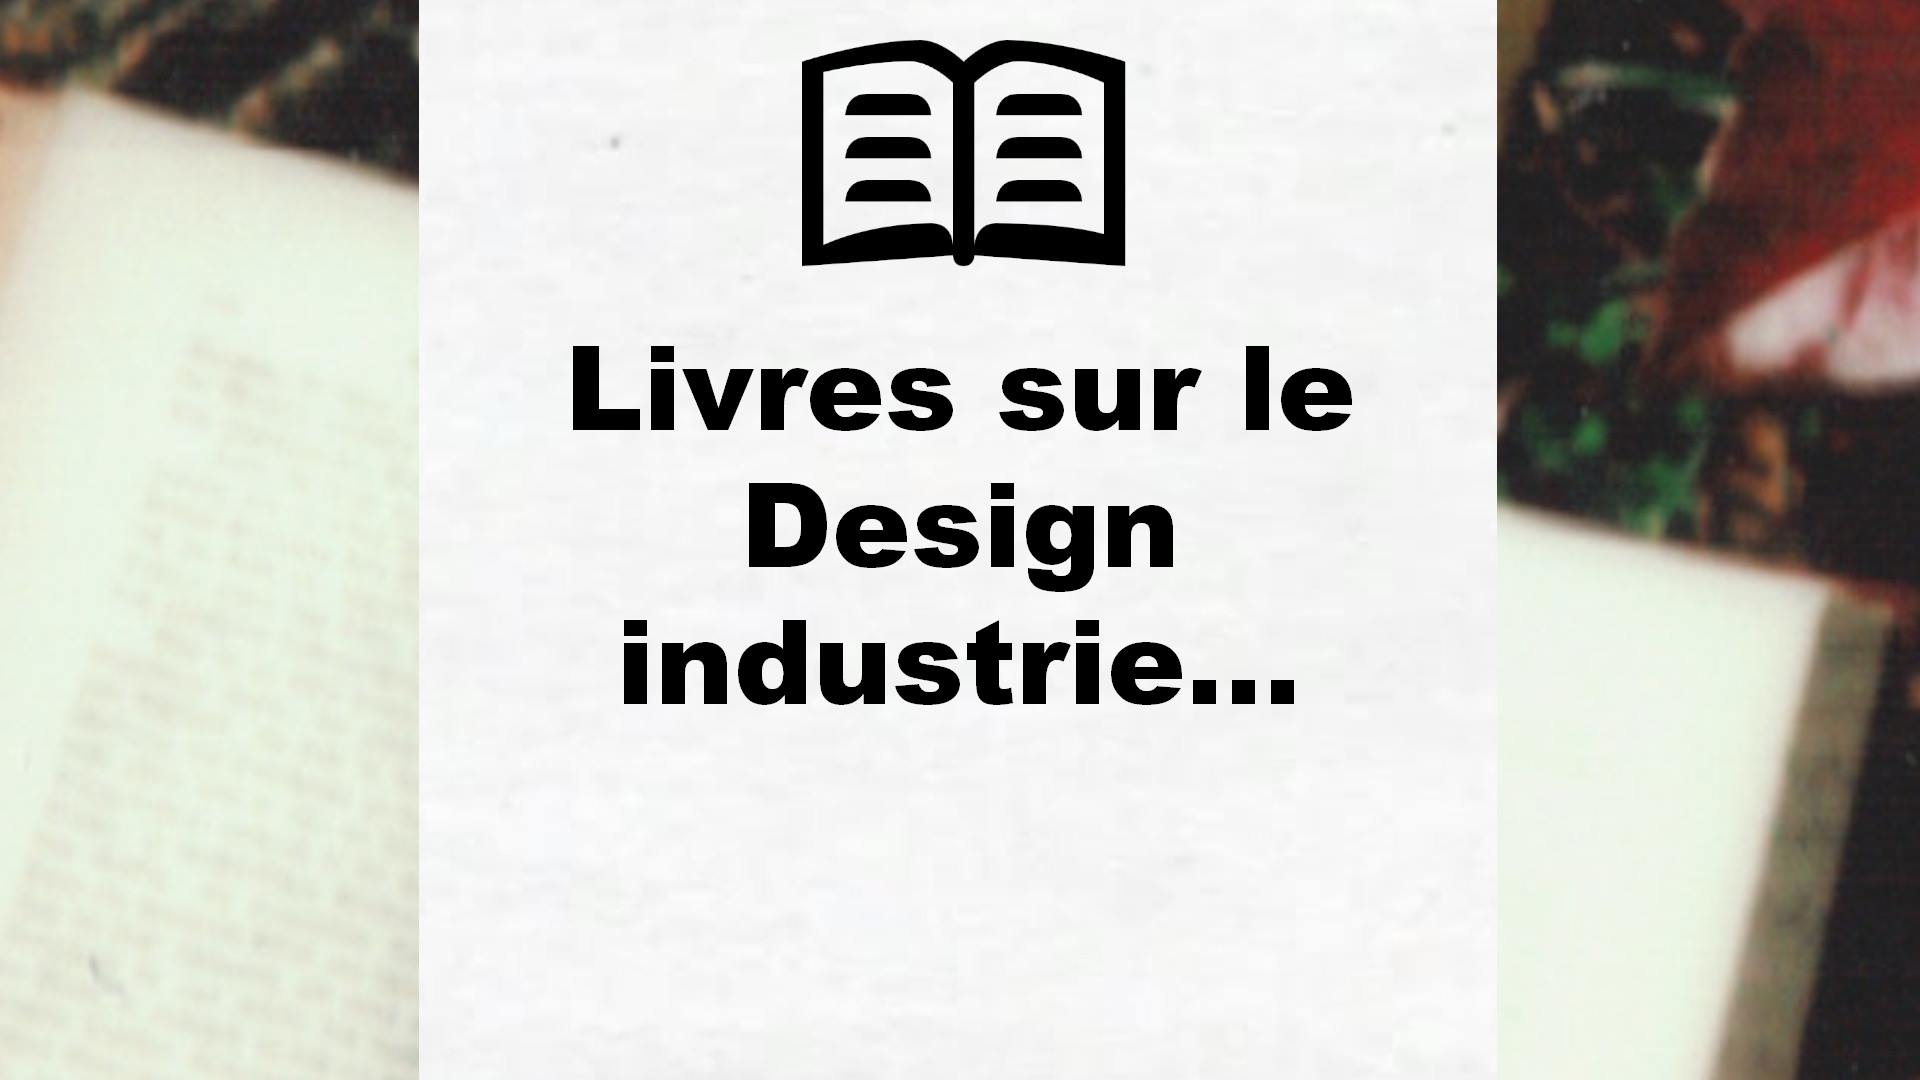 Livres sur le Design industriel